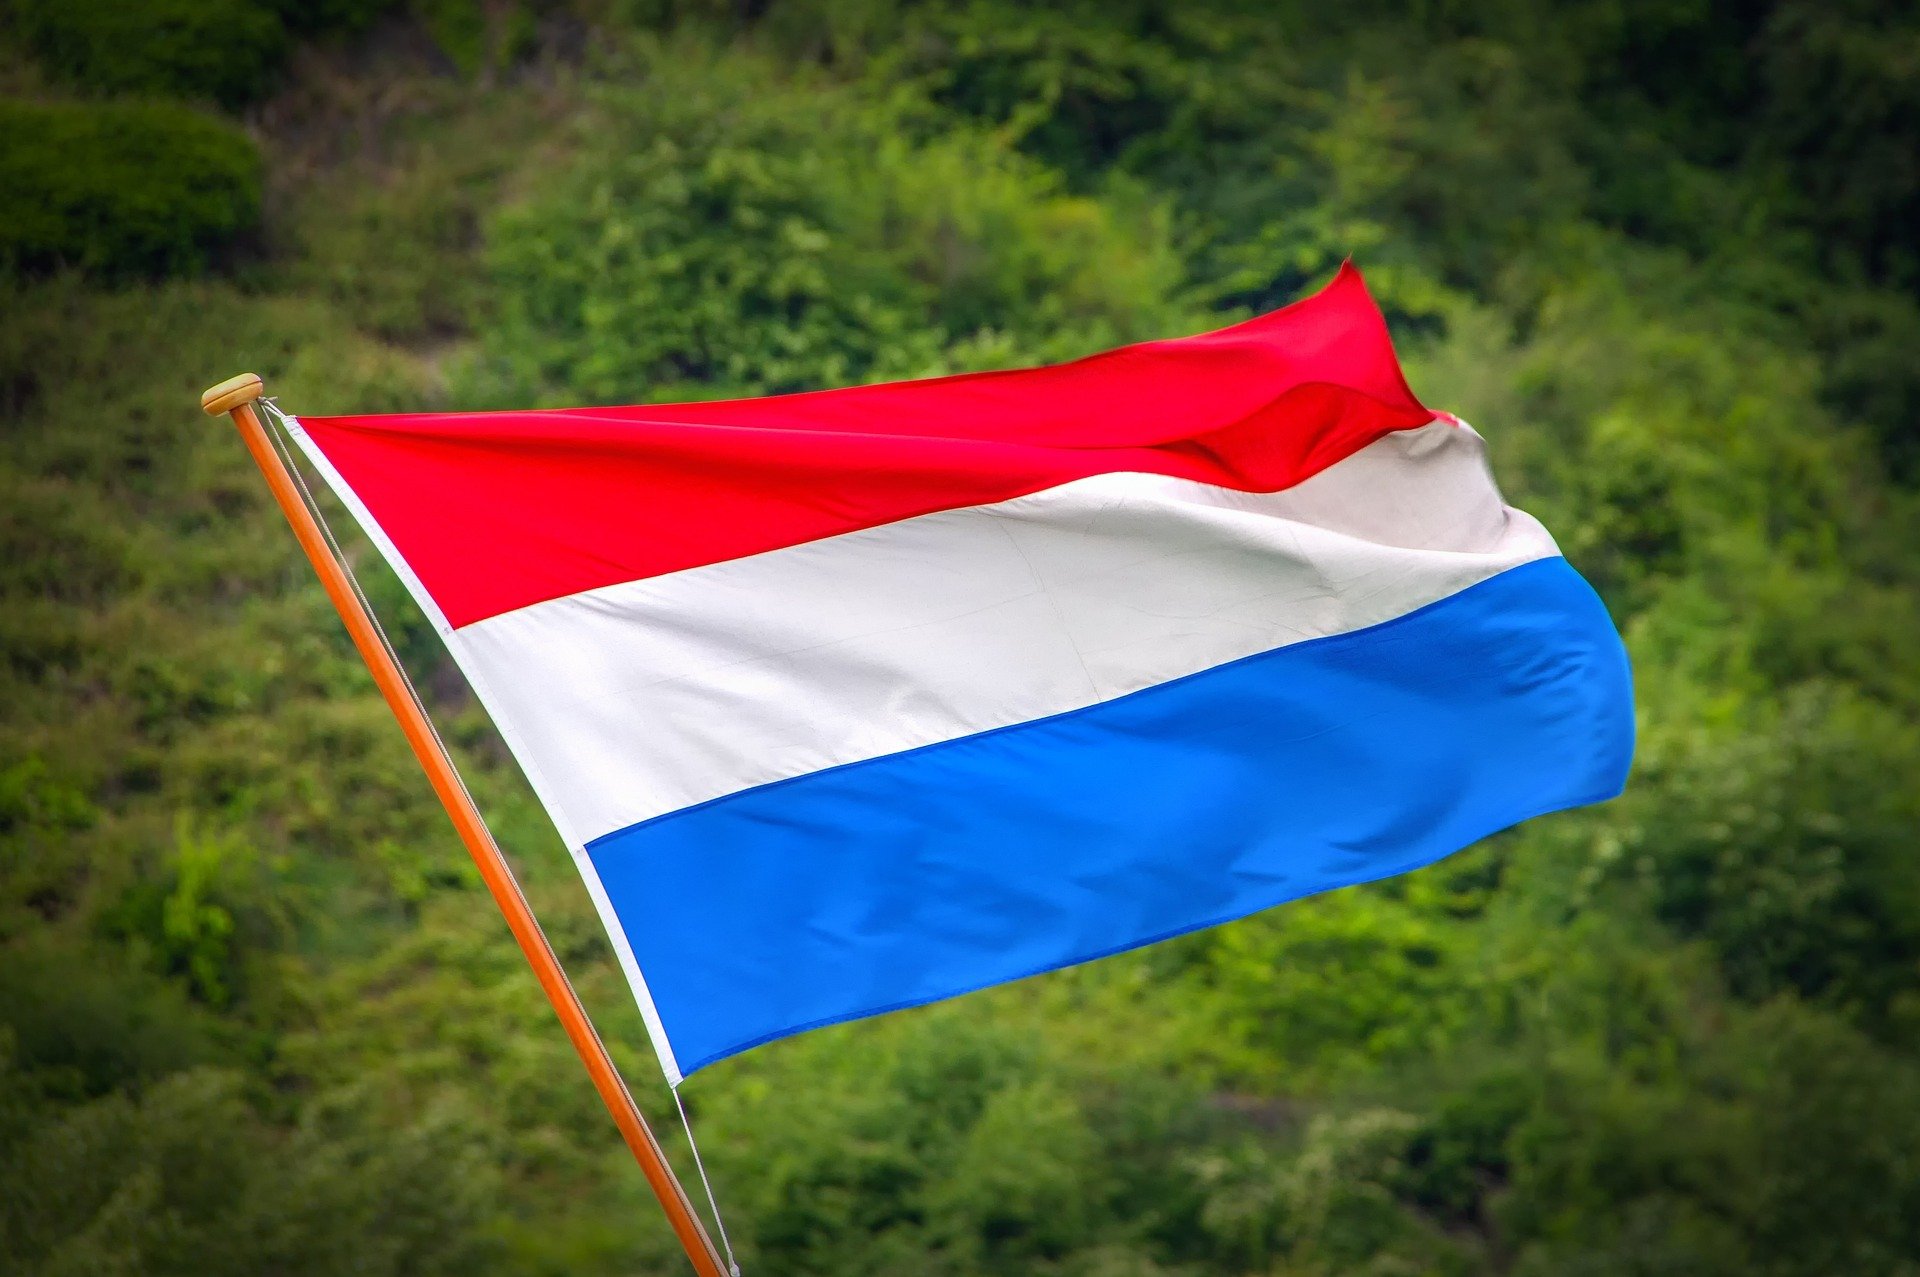 A Holanda tem uma das seleções mais tradicionais, mesmo sem ter sido campeão do mundo. Confira alguns dos melhores jogadores da Holanda.